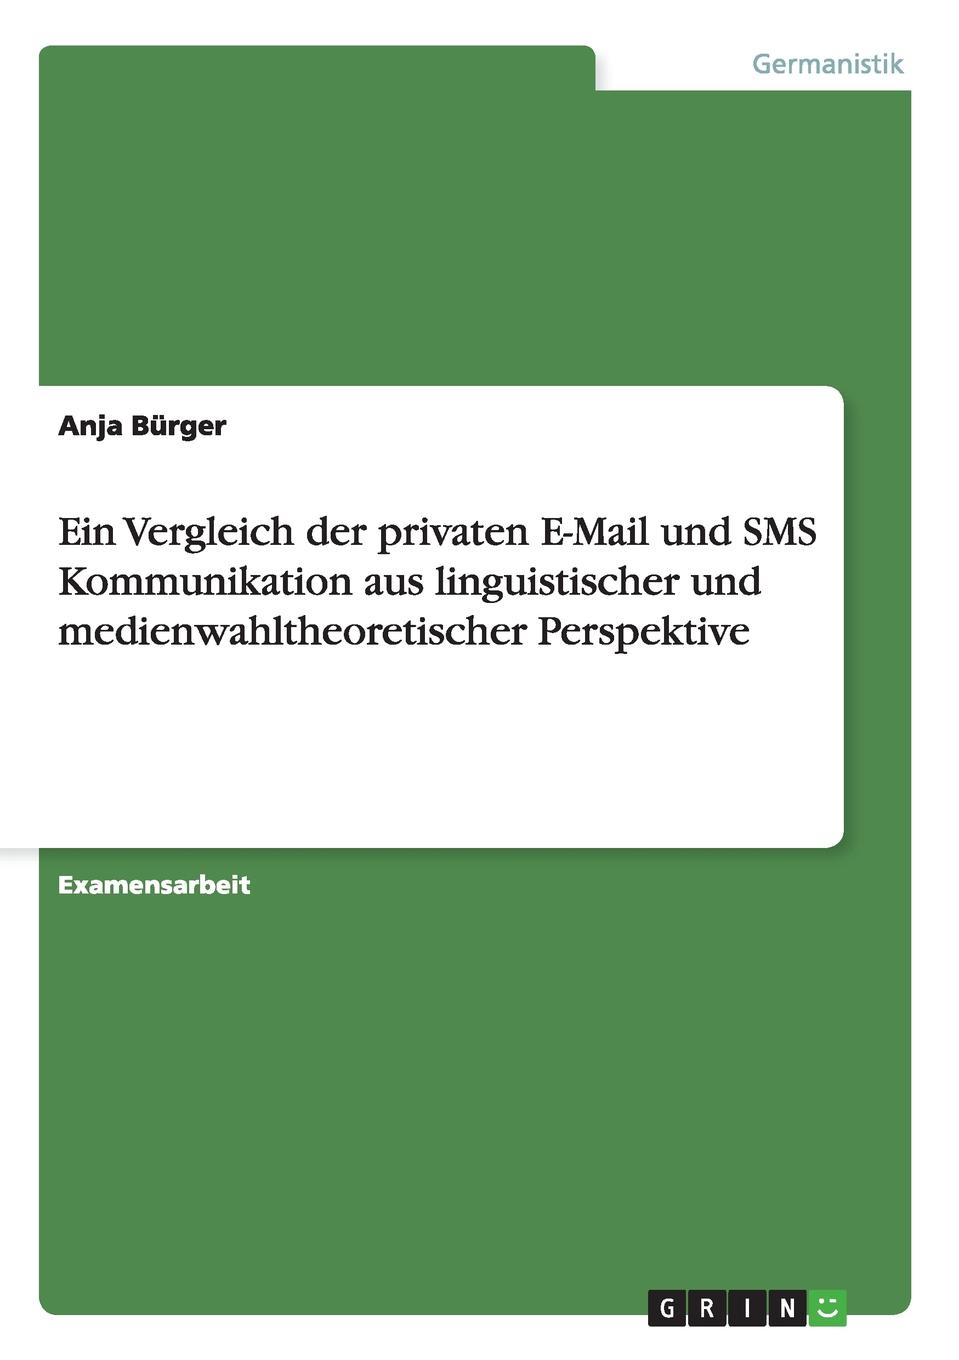 Anja Burger Ein Vergleich Der Privaten E-mail Und SMS Kommunikation Aus Linguistischer Und Medienwahltheoretischer Perspektive